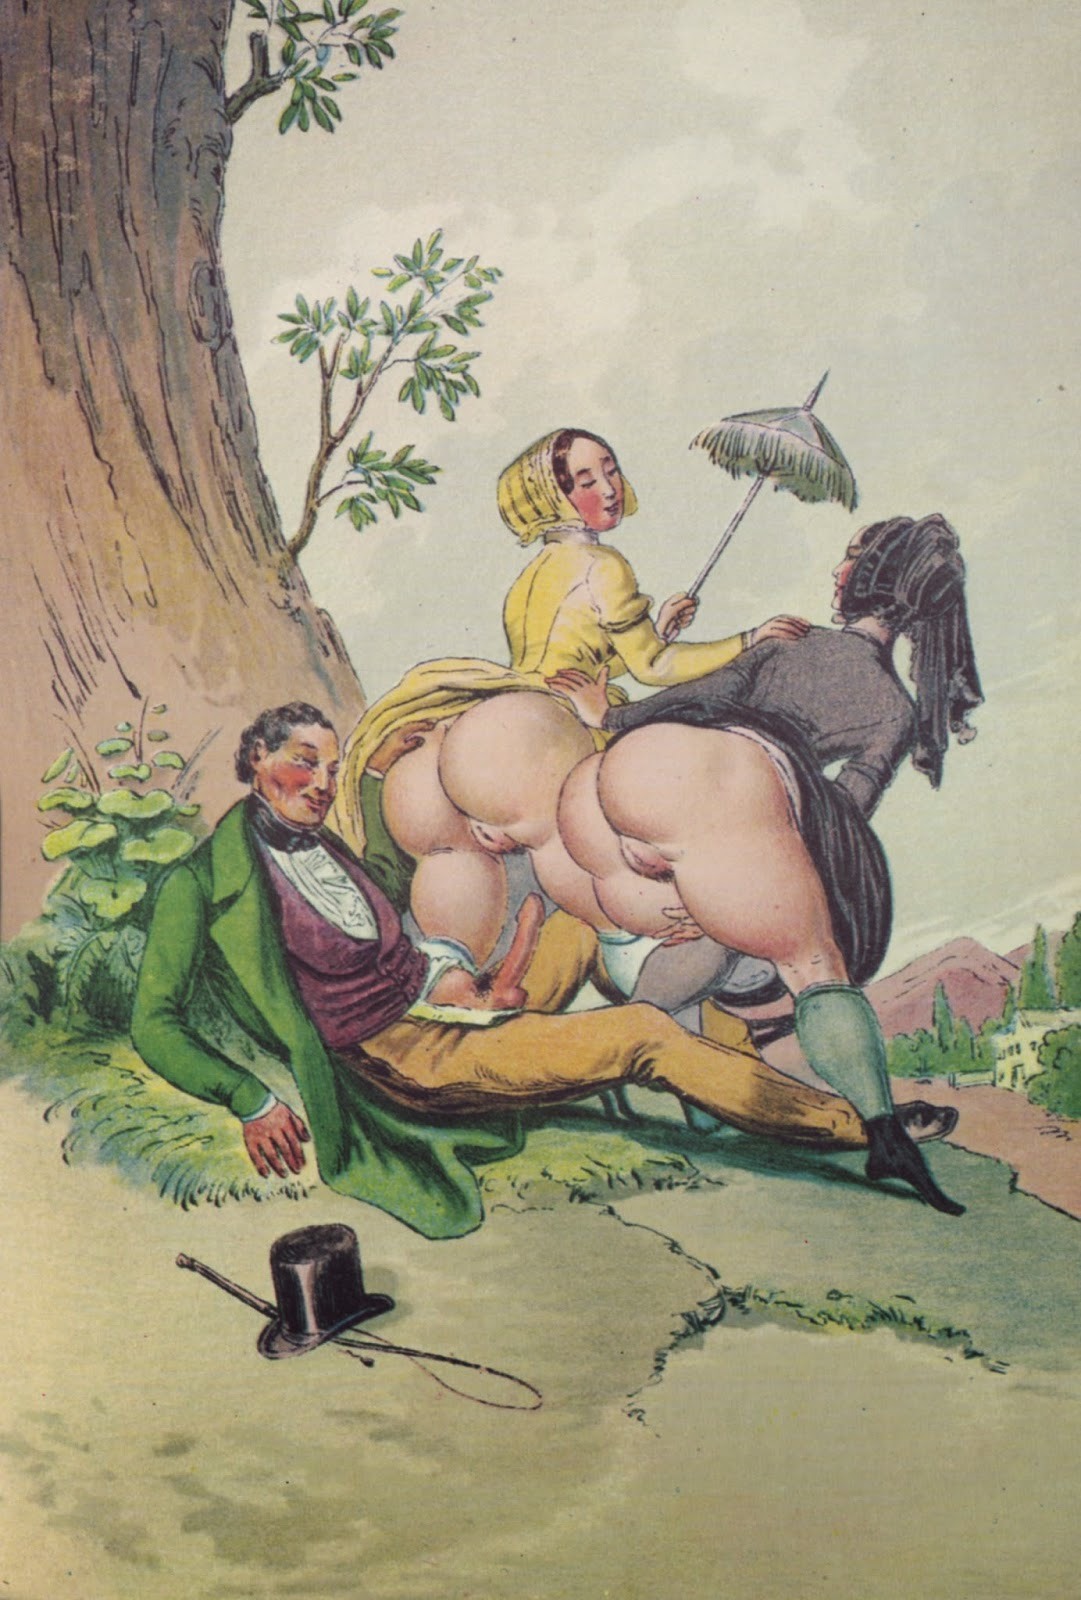 Голые девушки в средневековье (50 фото) - Порно фото голых девушек